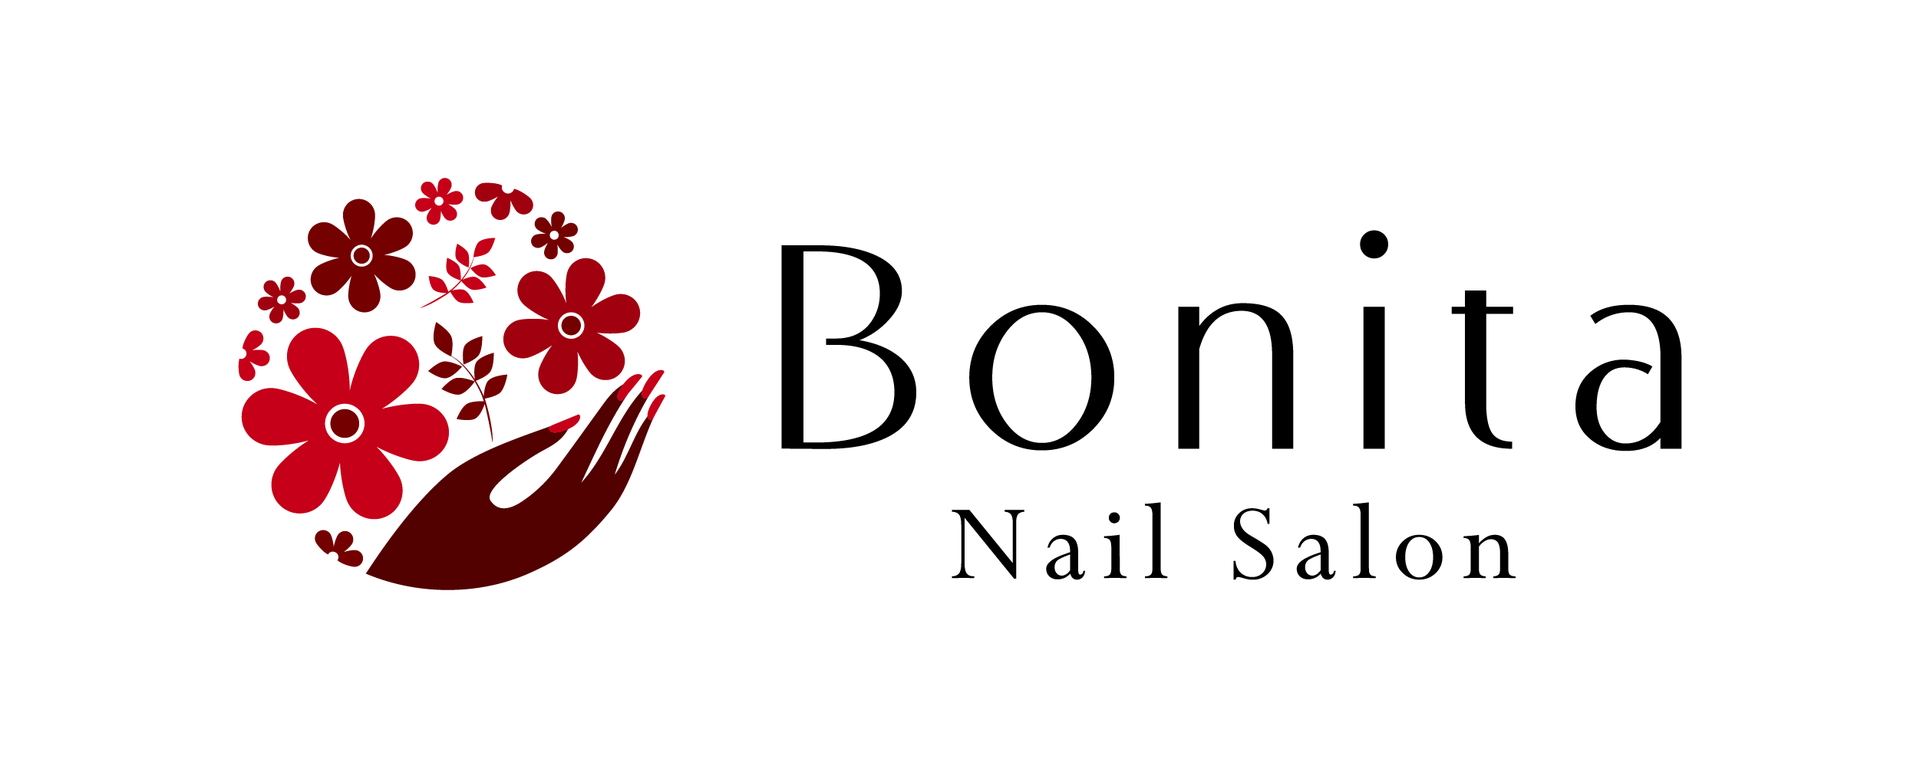 Nail Salon BONITA